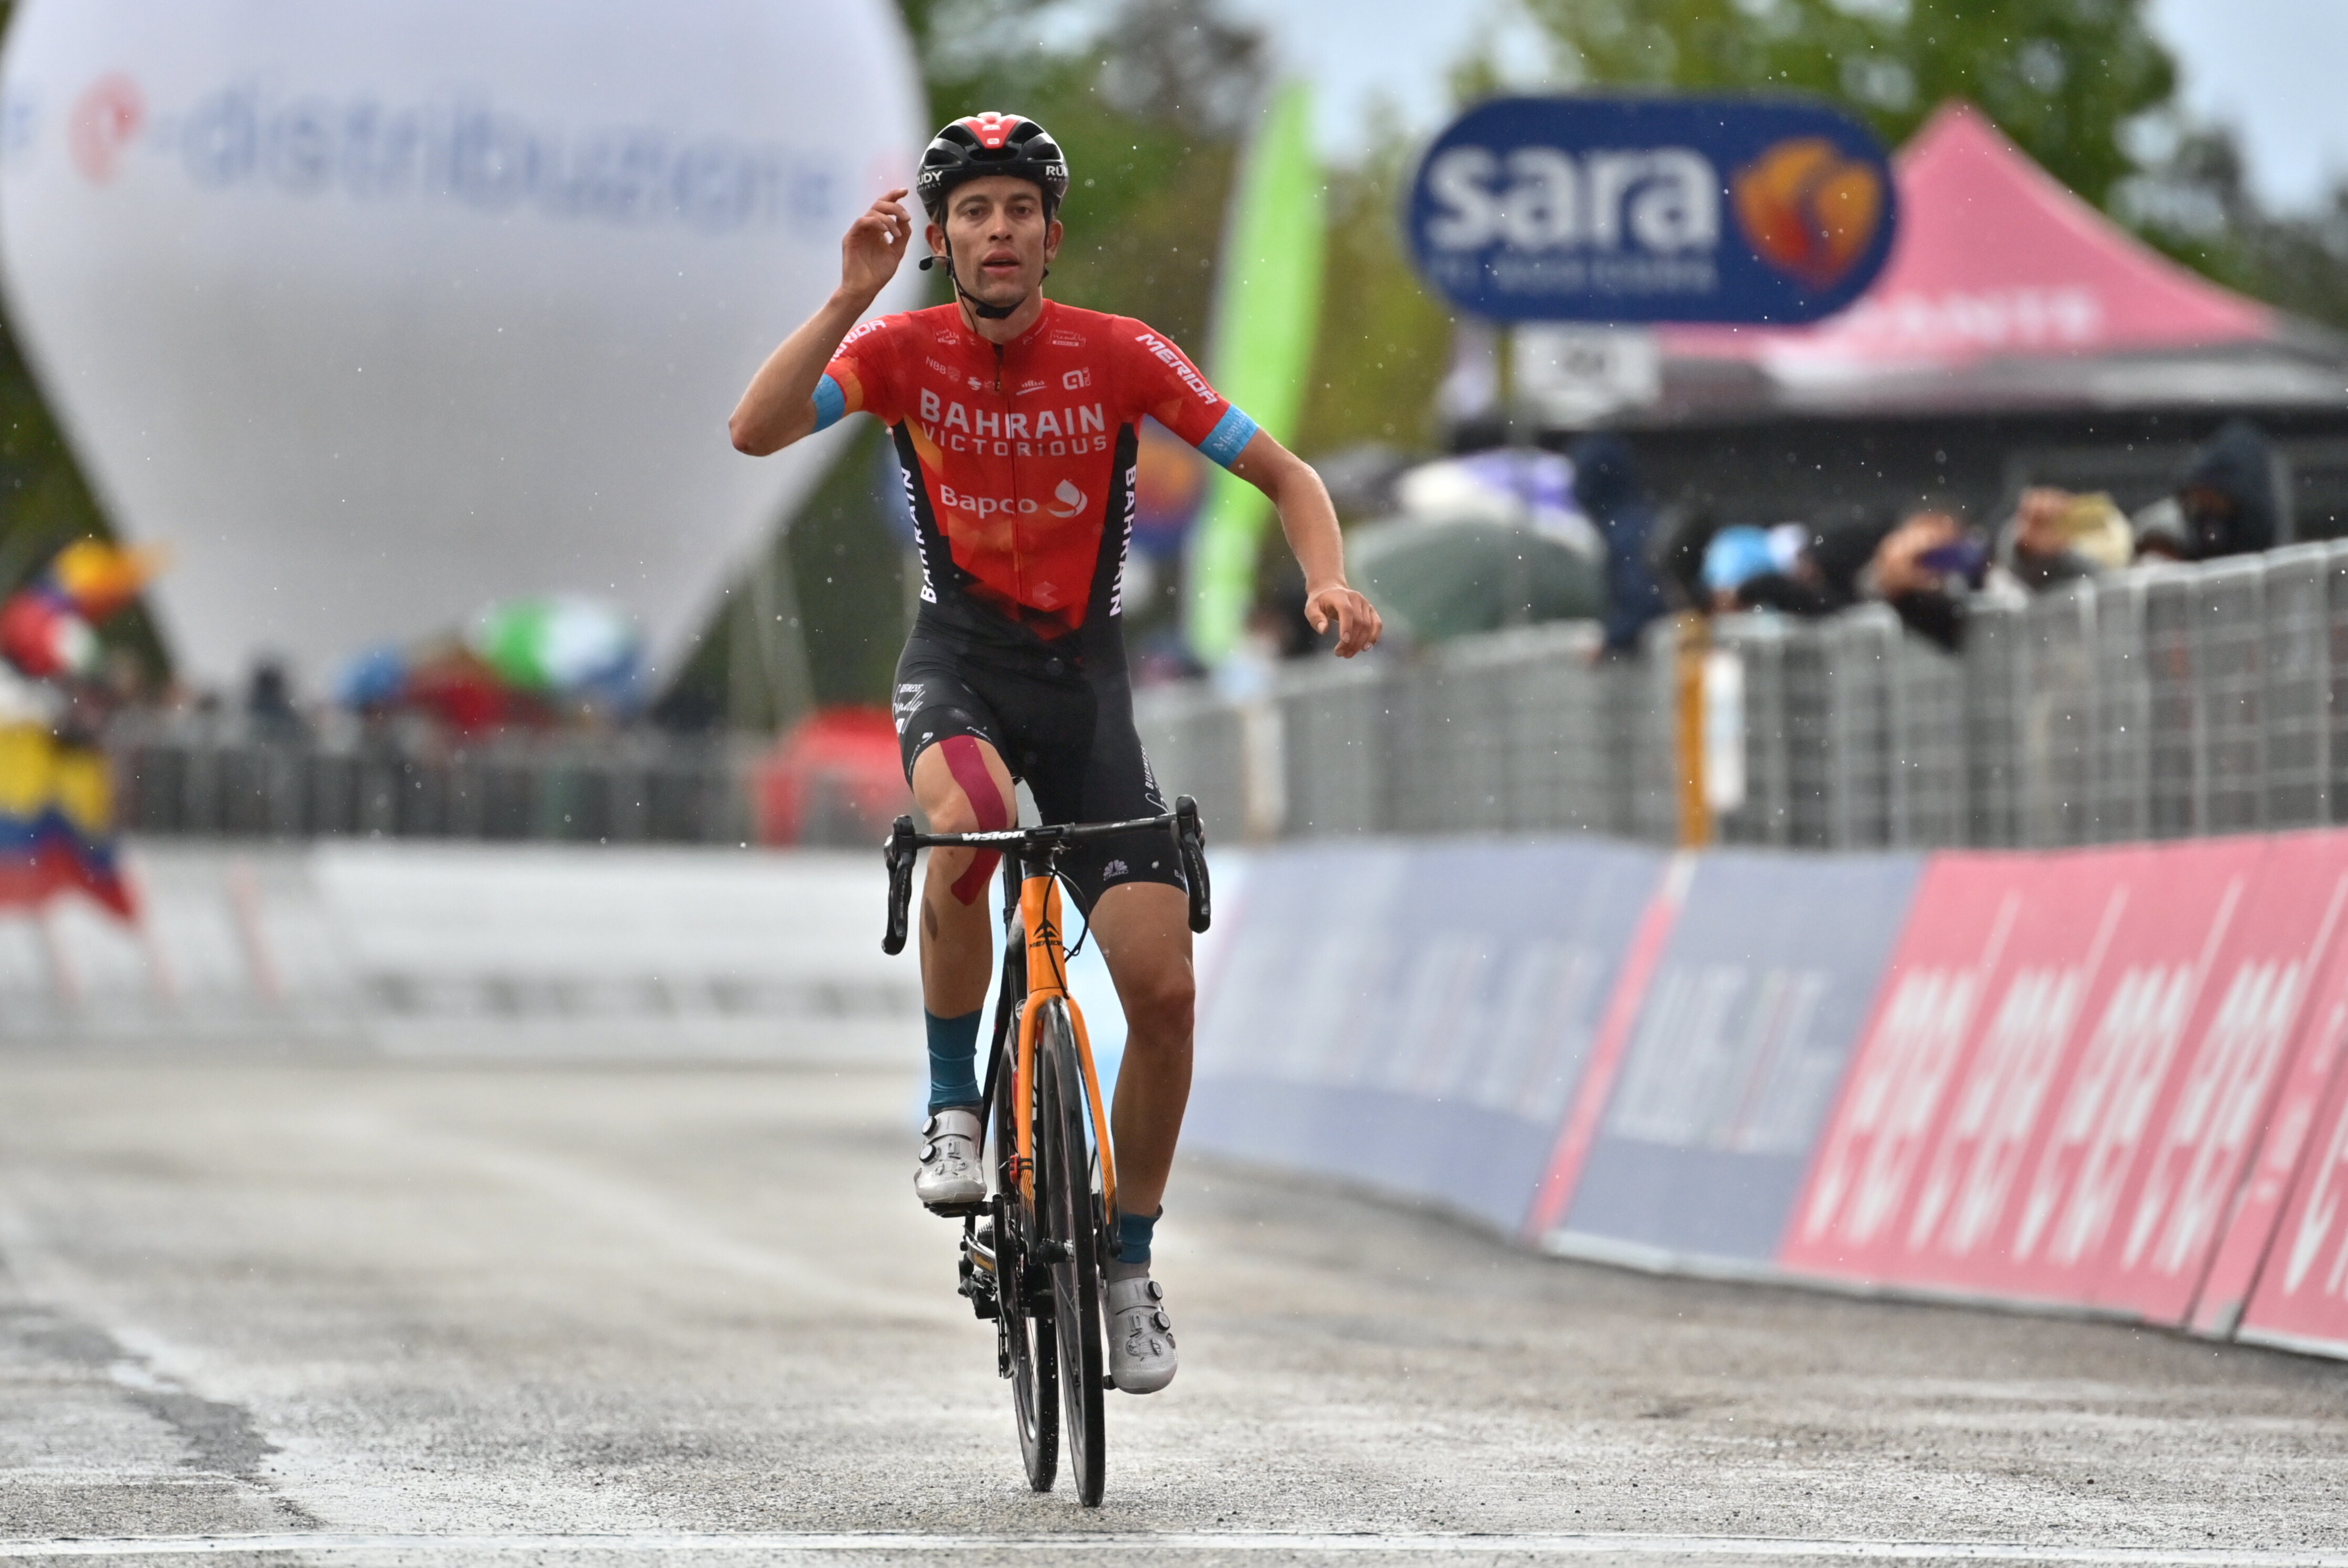 Finishphoto of Gino Mäder winning Giro d'Italia Stage 6.